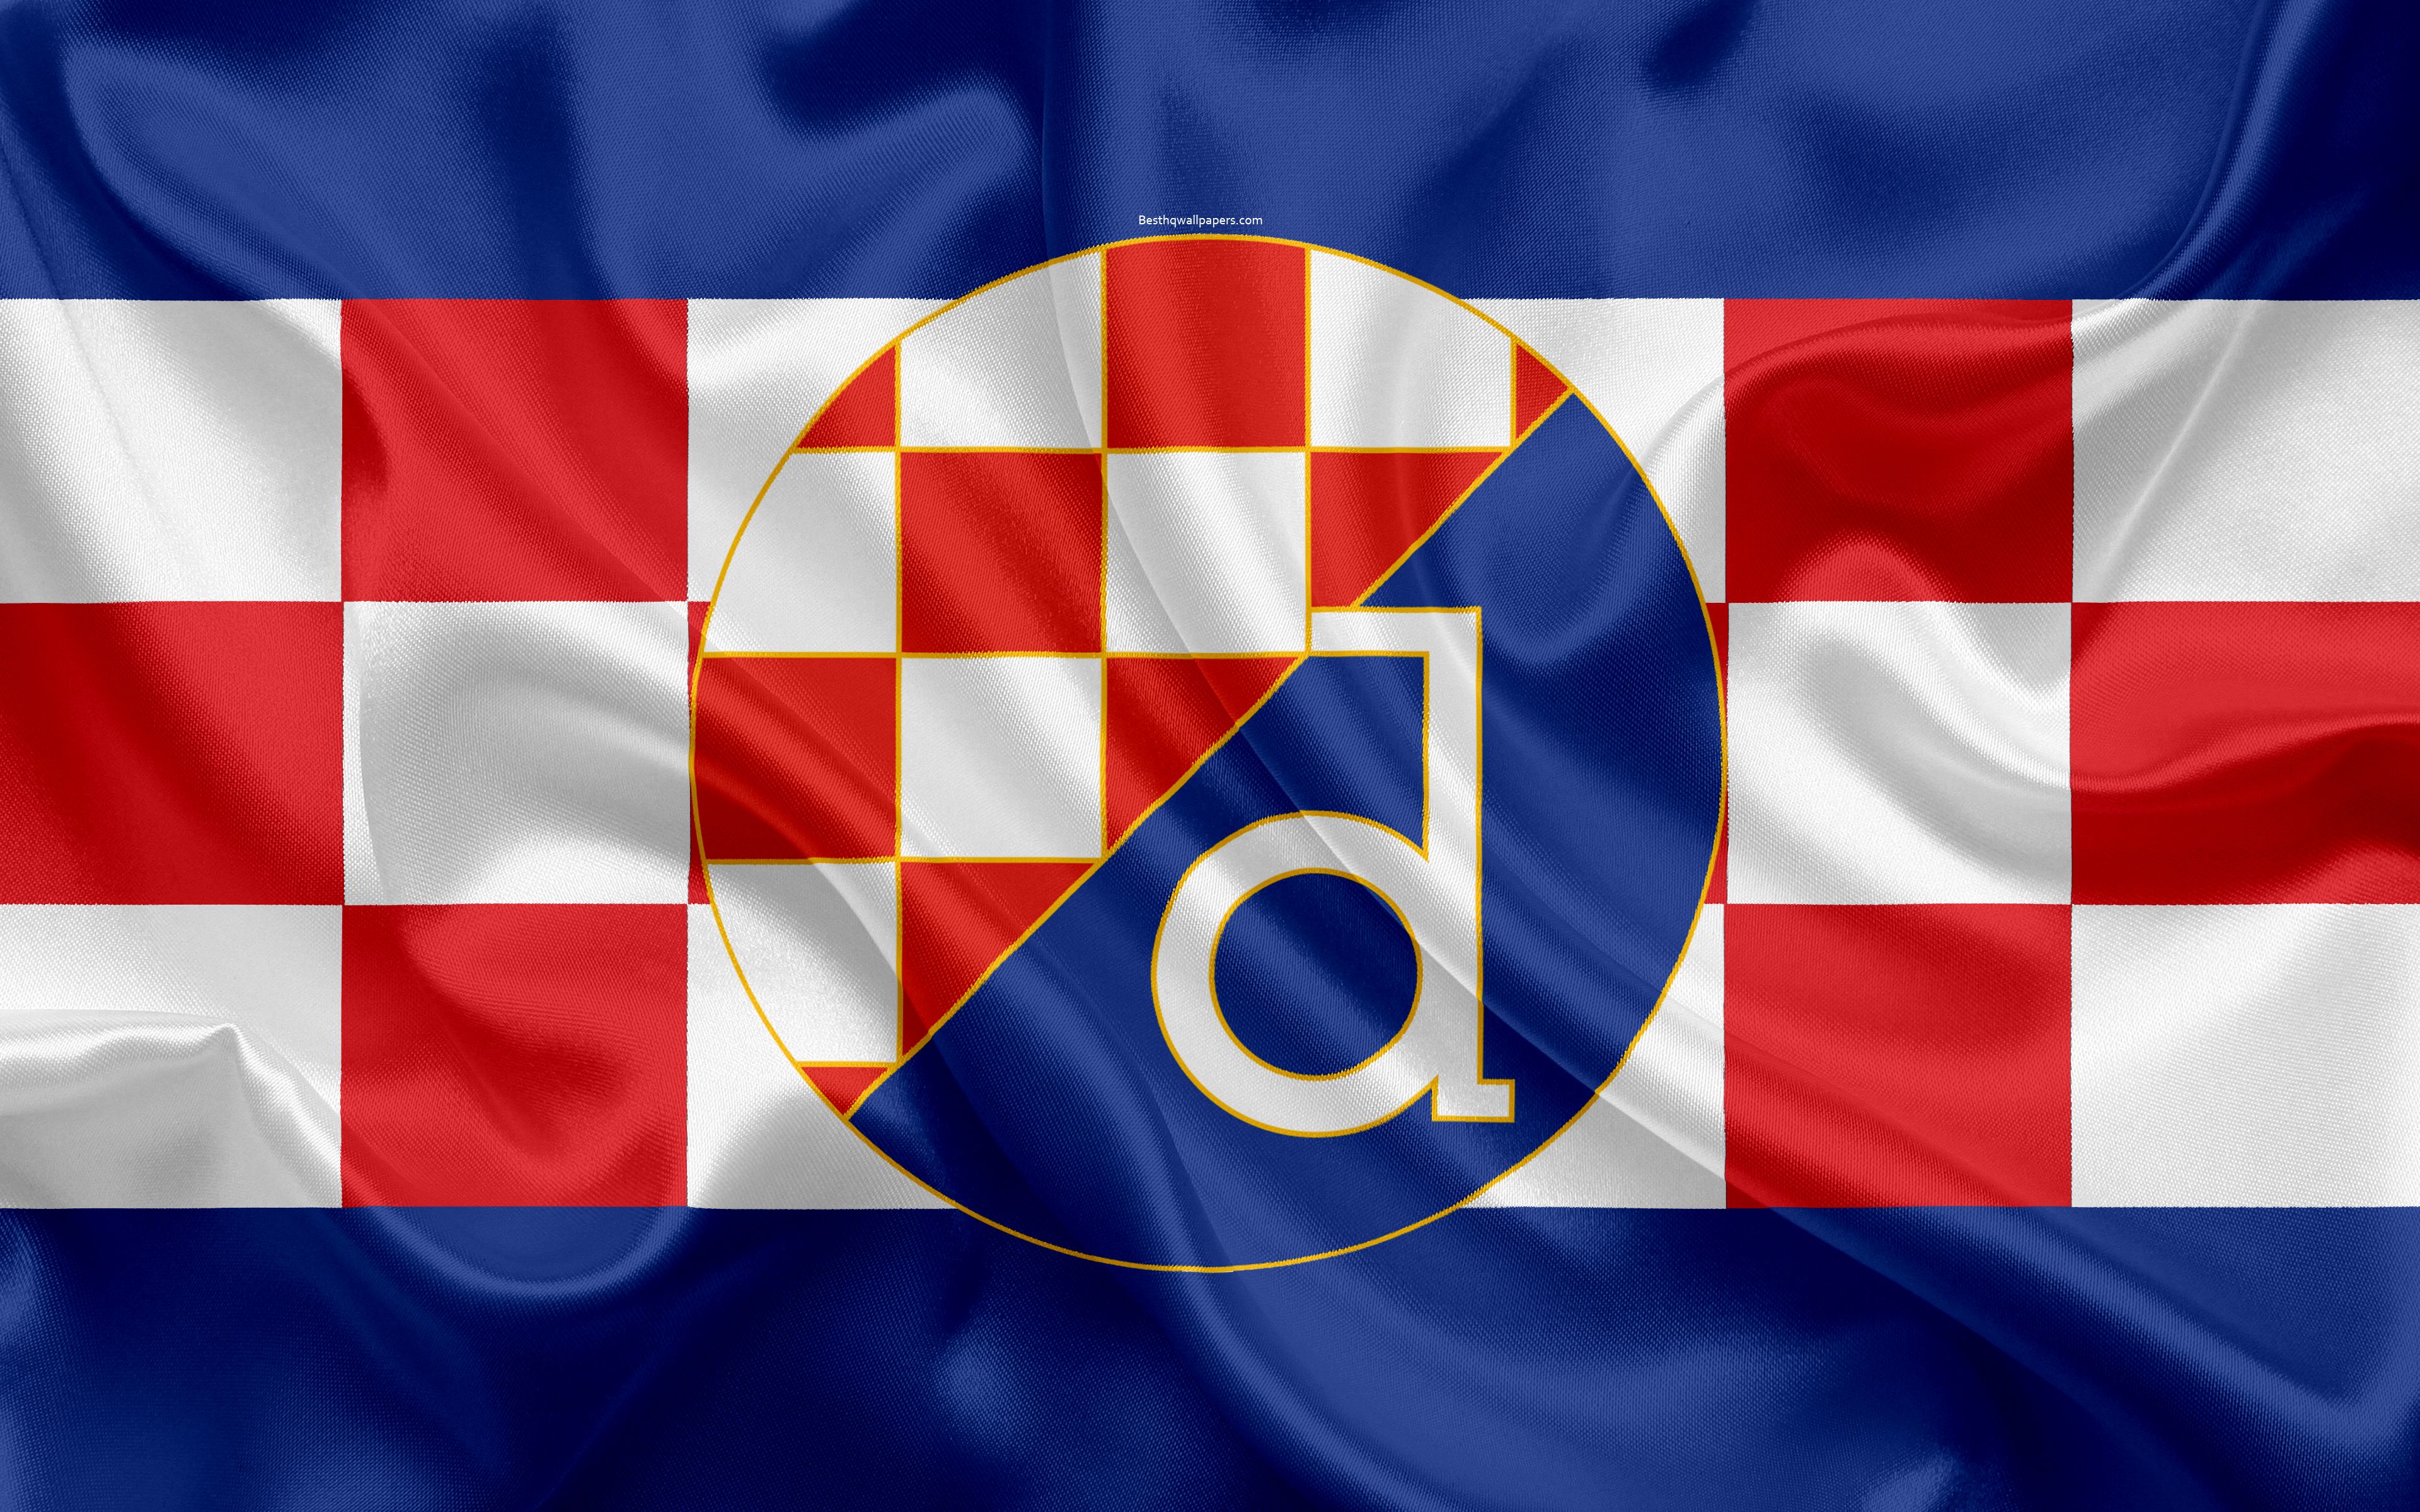 Download wallpaper Dinamo Zagreb FC, 4k, Croatian football club